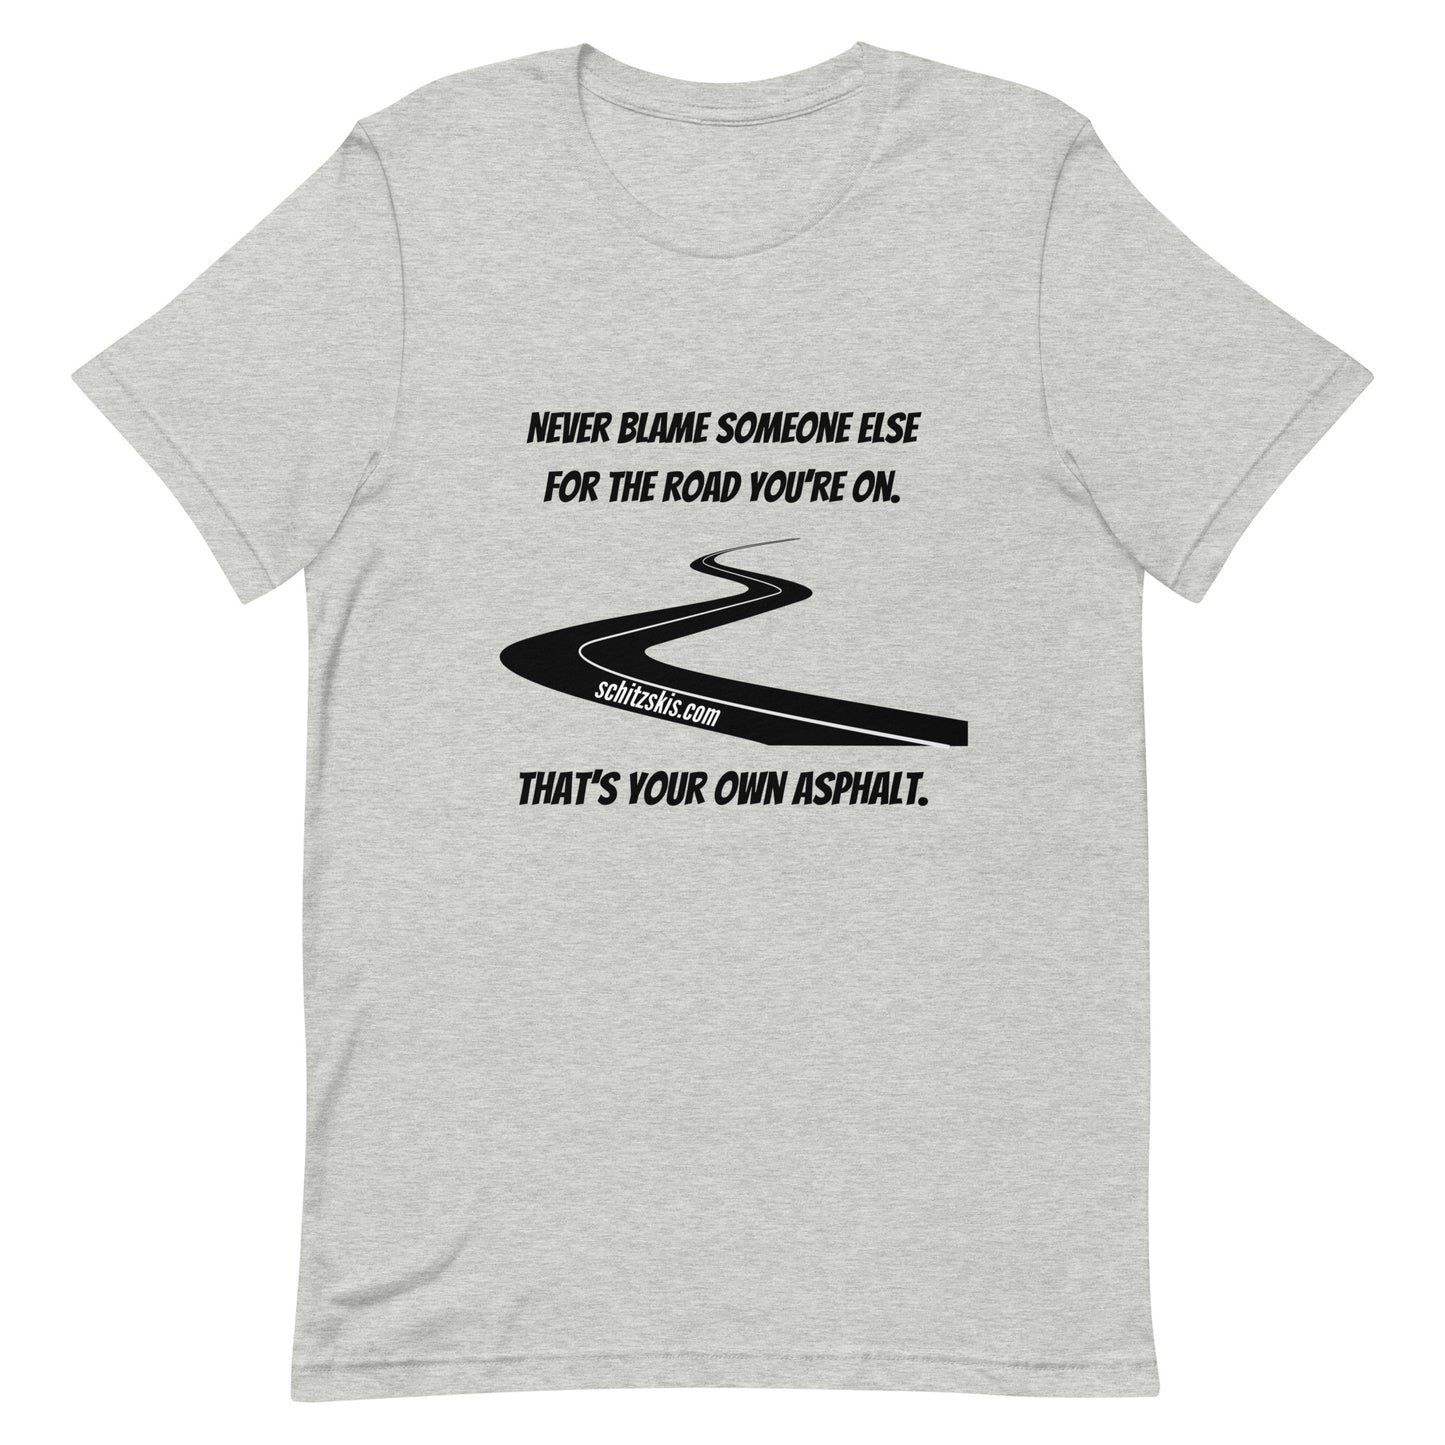 It's Your Own Asphalt T-Shirt